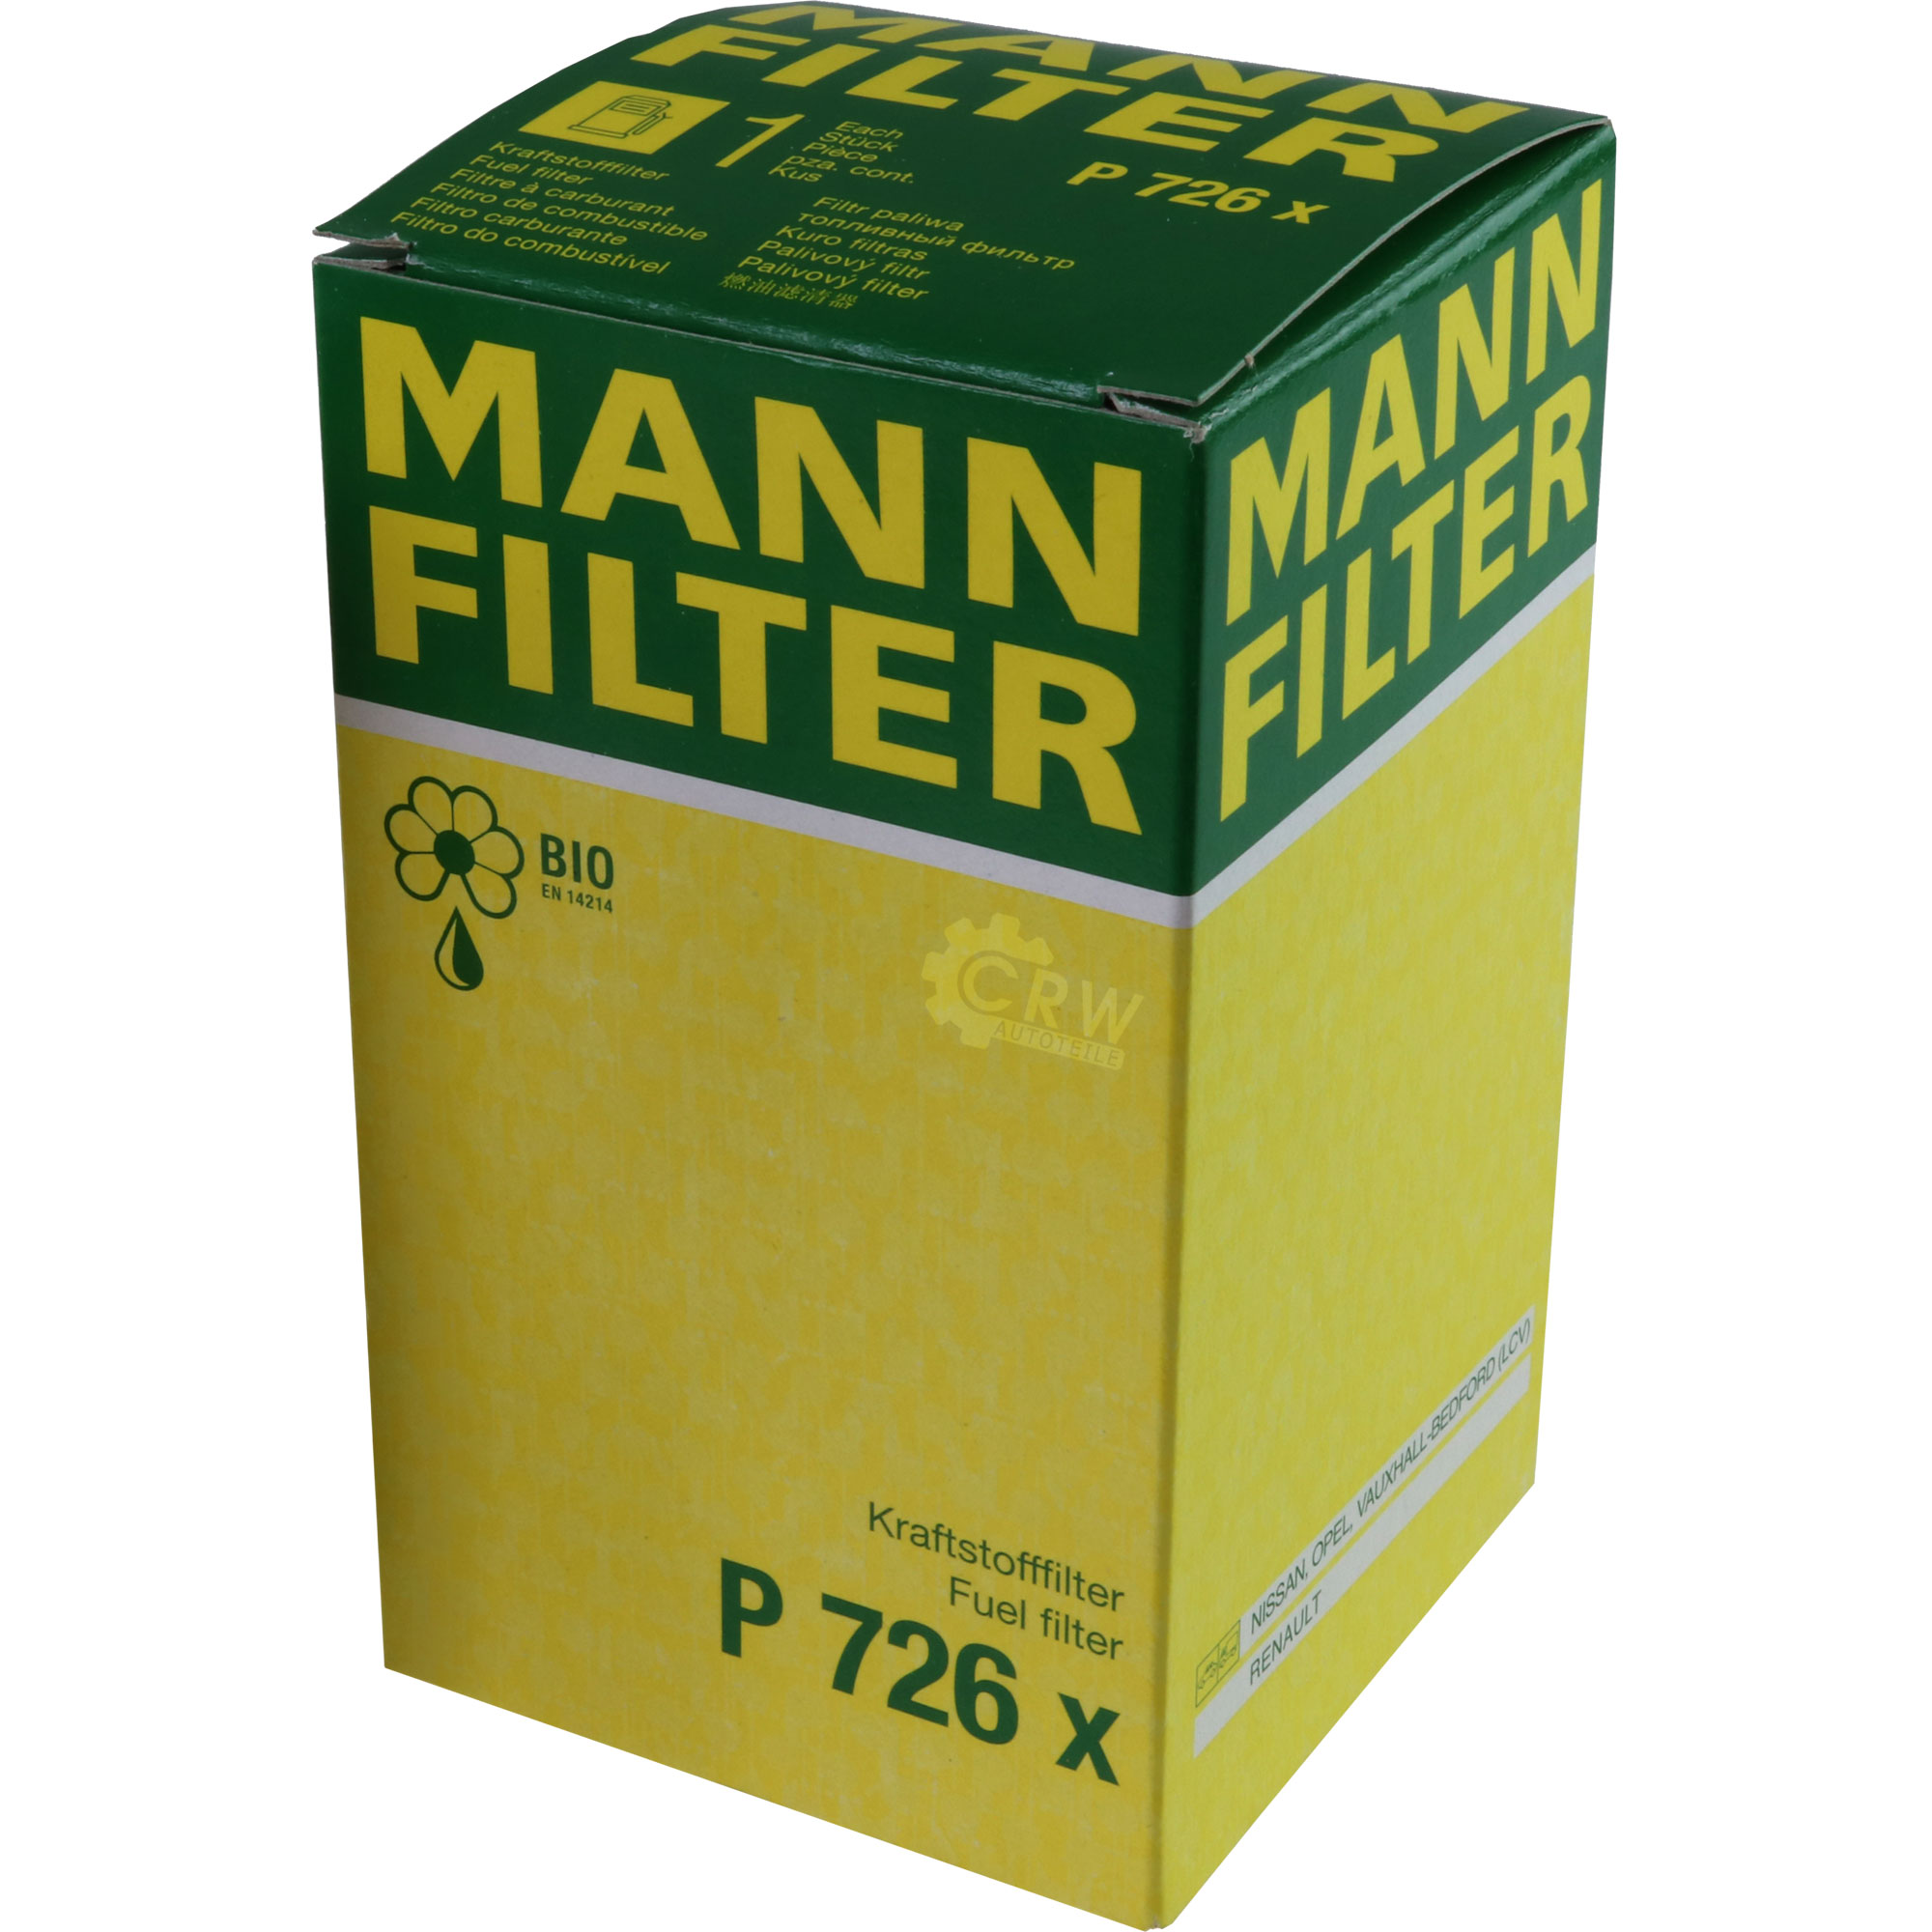 MANN-FILTER Kraftstofffilter P 726 x Fuel Filter